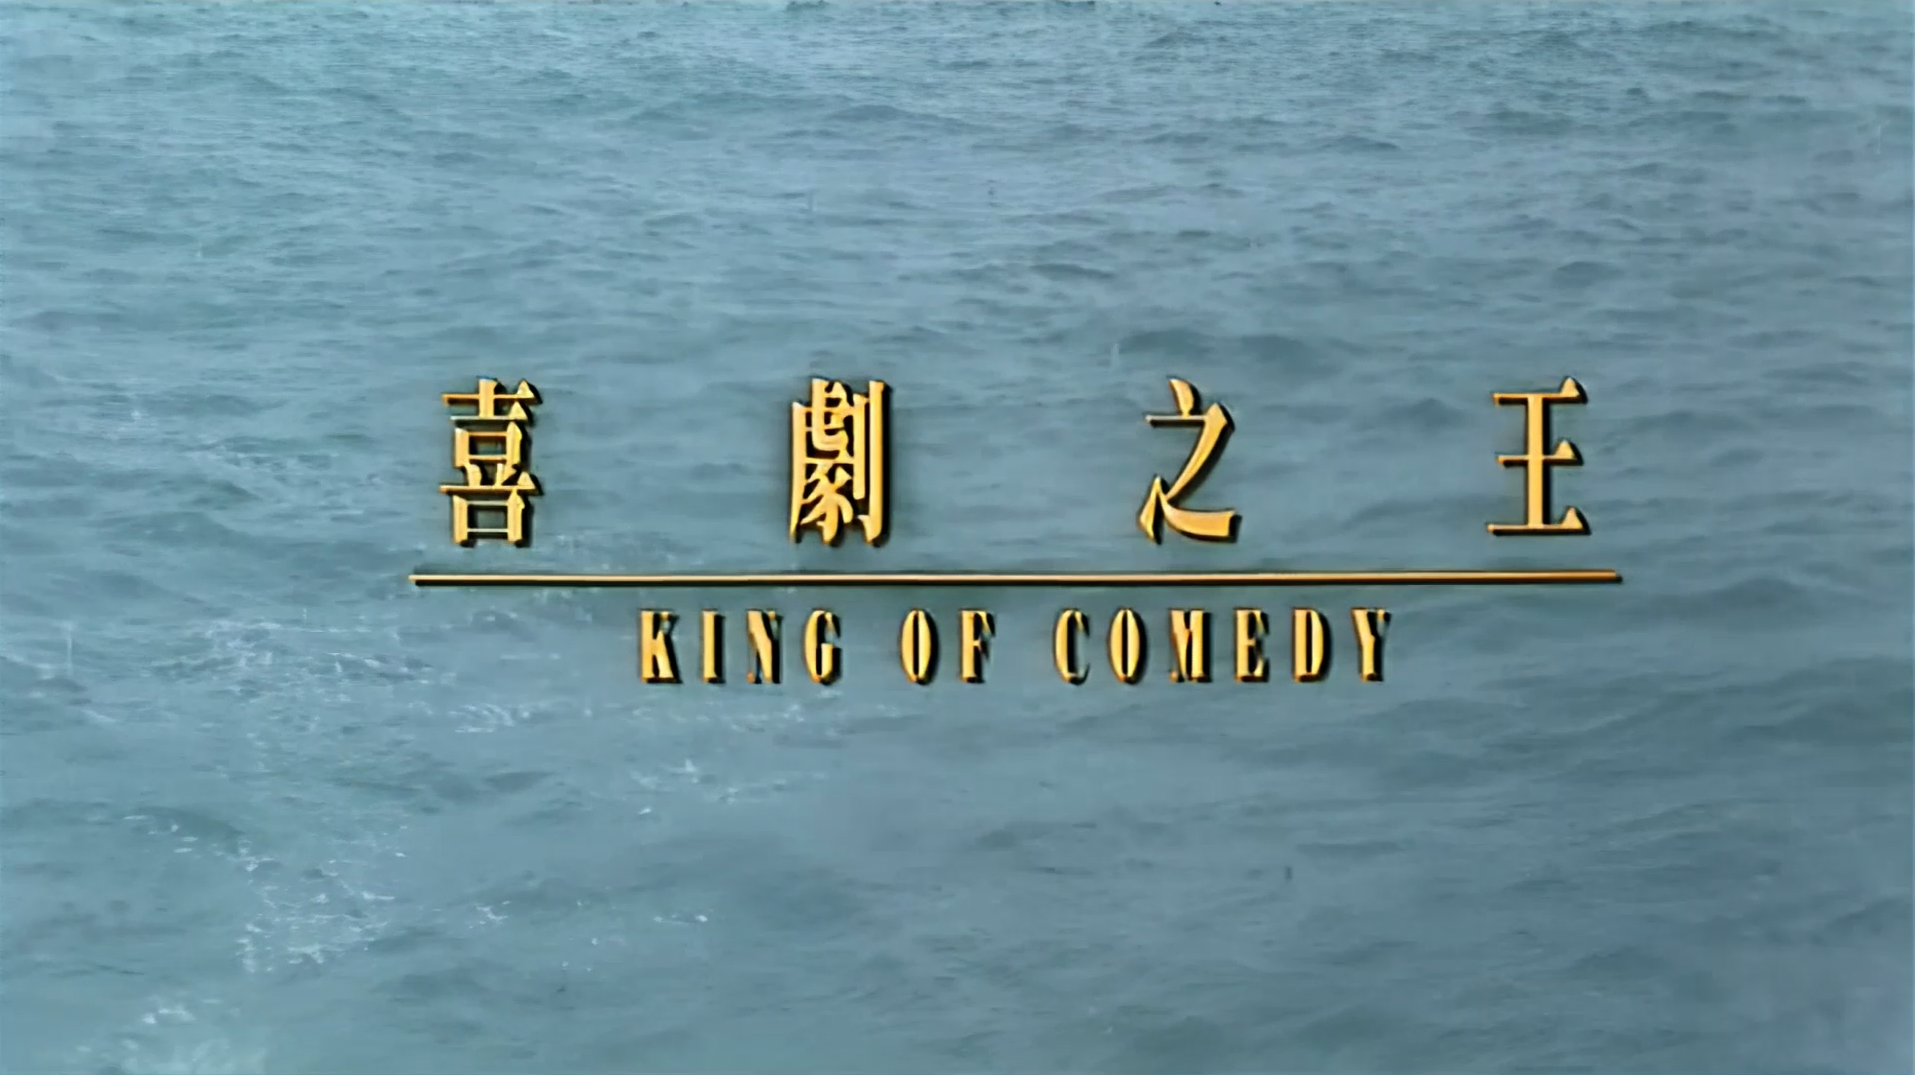 喜剧之王 [豆瓣电影Top250 DVD高清修复60帧简繁中字] King of Comedy 1999 DVD Blu-ray 1080p AVC AC3-5 1-BHYS@OurBits[21.7GB]-2.png